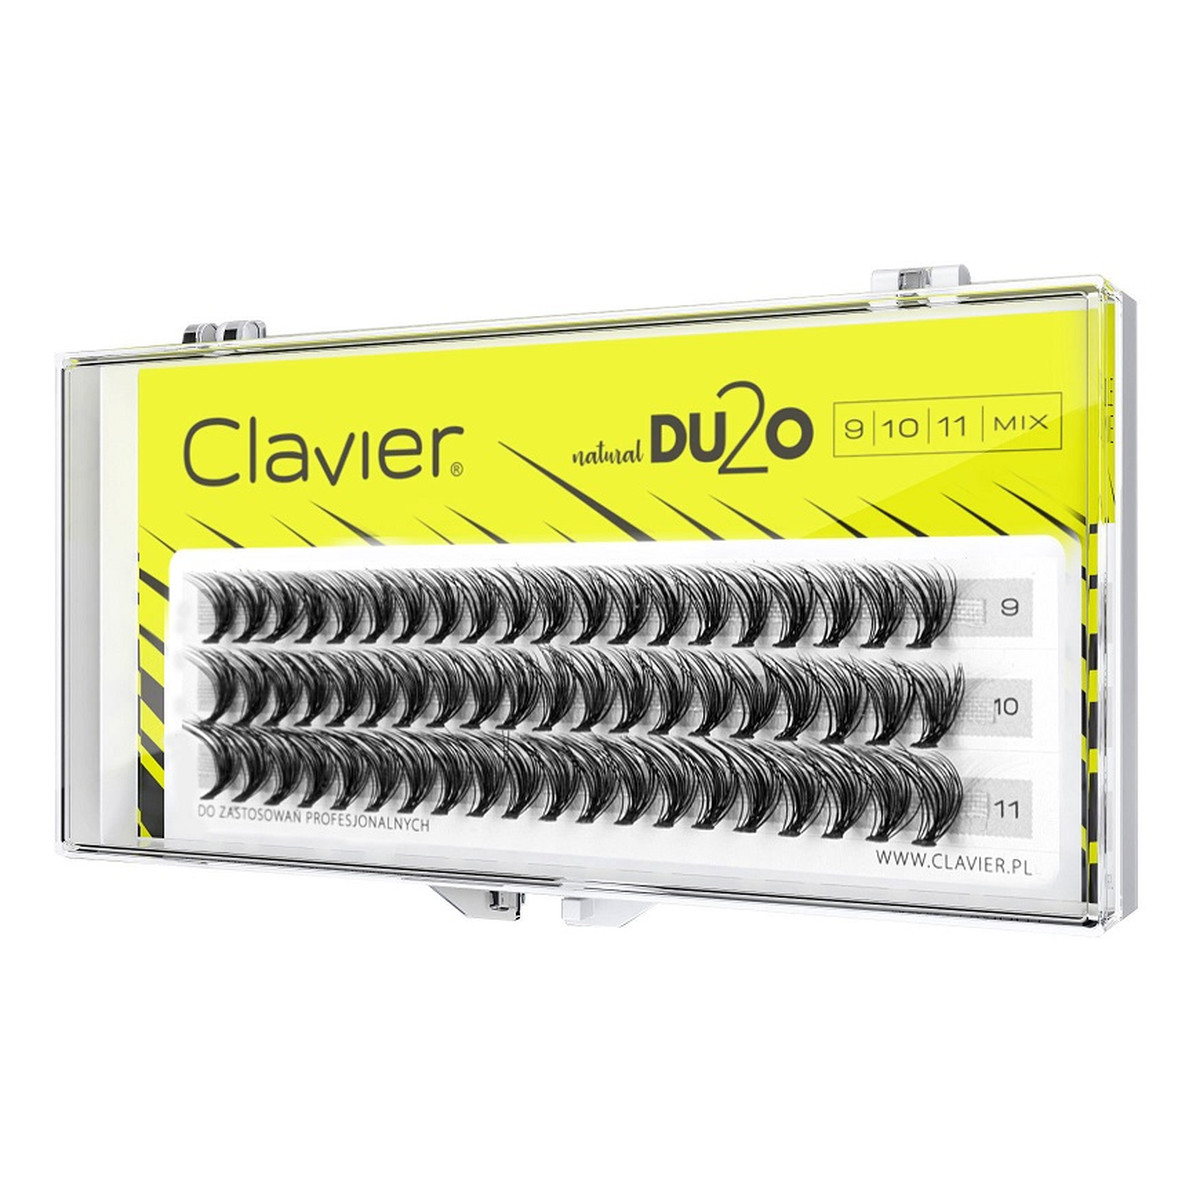 Clavier DU2O Double Volume MIX kępki rzęs 9mm-10mm-11mm